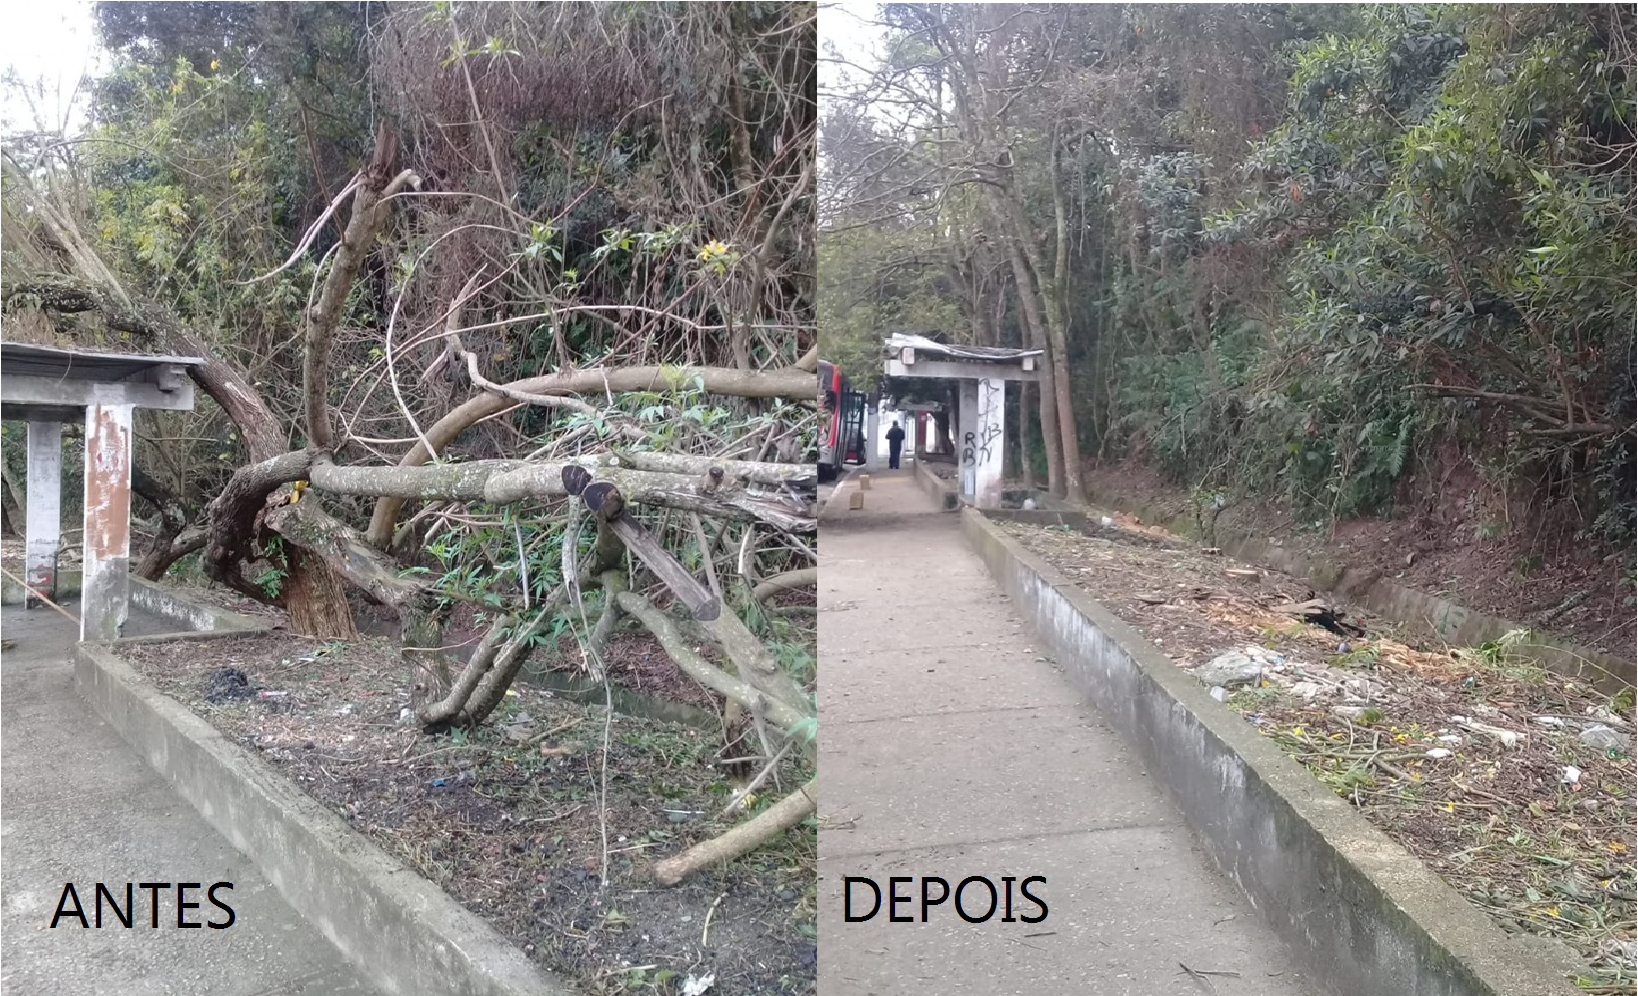 À esquerda, tronco de árvore retorcido invade calçada próximo a um ponto de ônibus; à direita, calçada ao lado de ponto de ônibus livre após a remoção da árvore que estava no caminho.